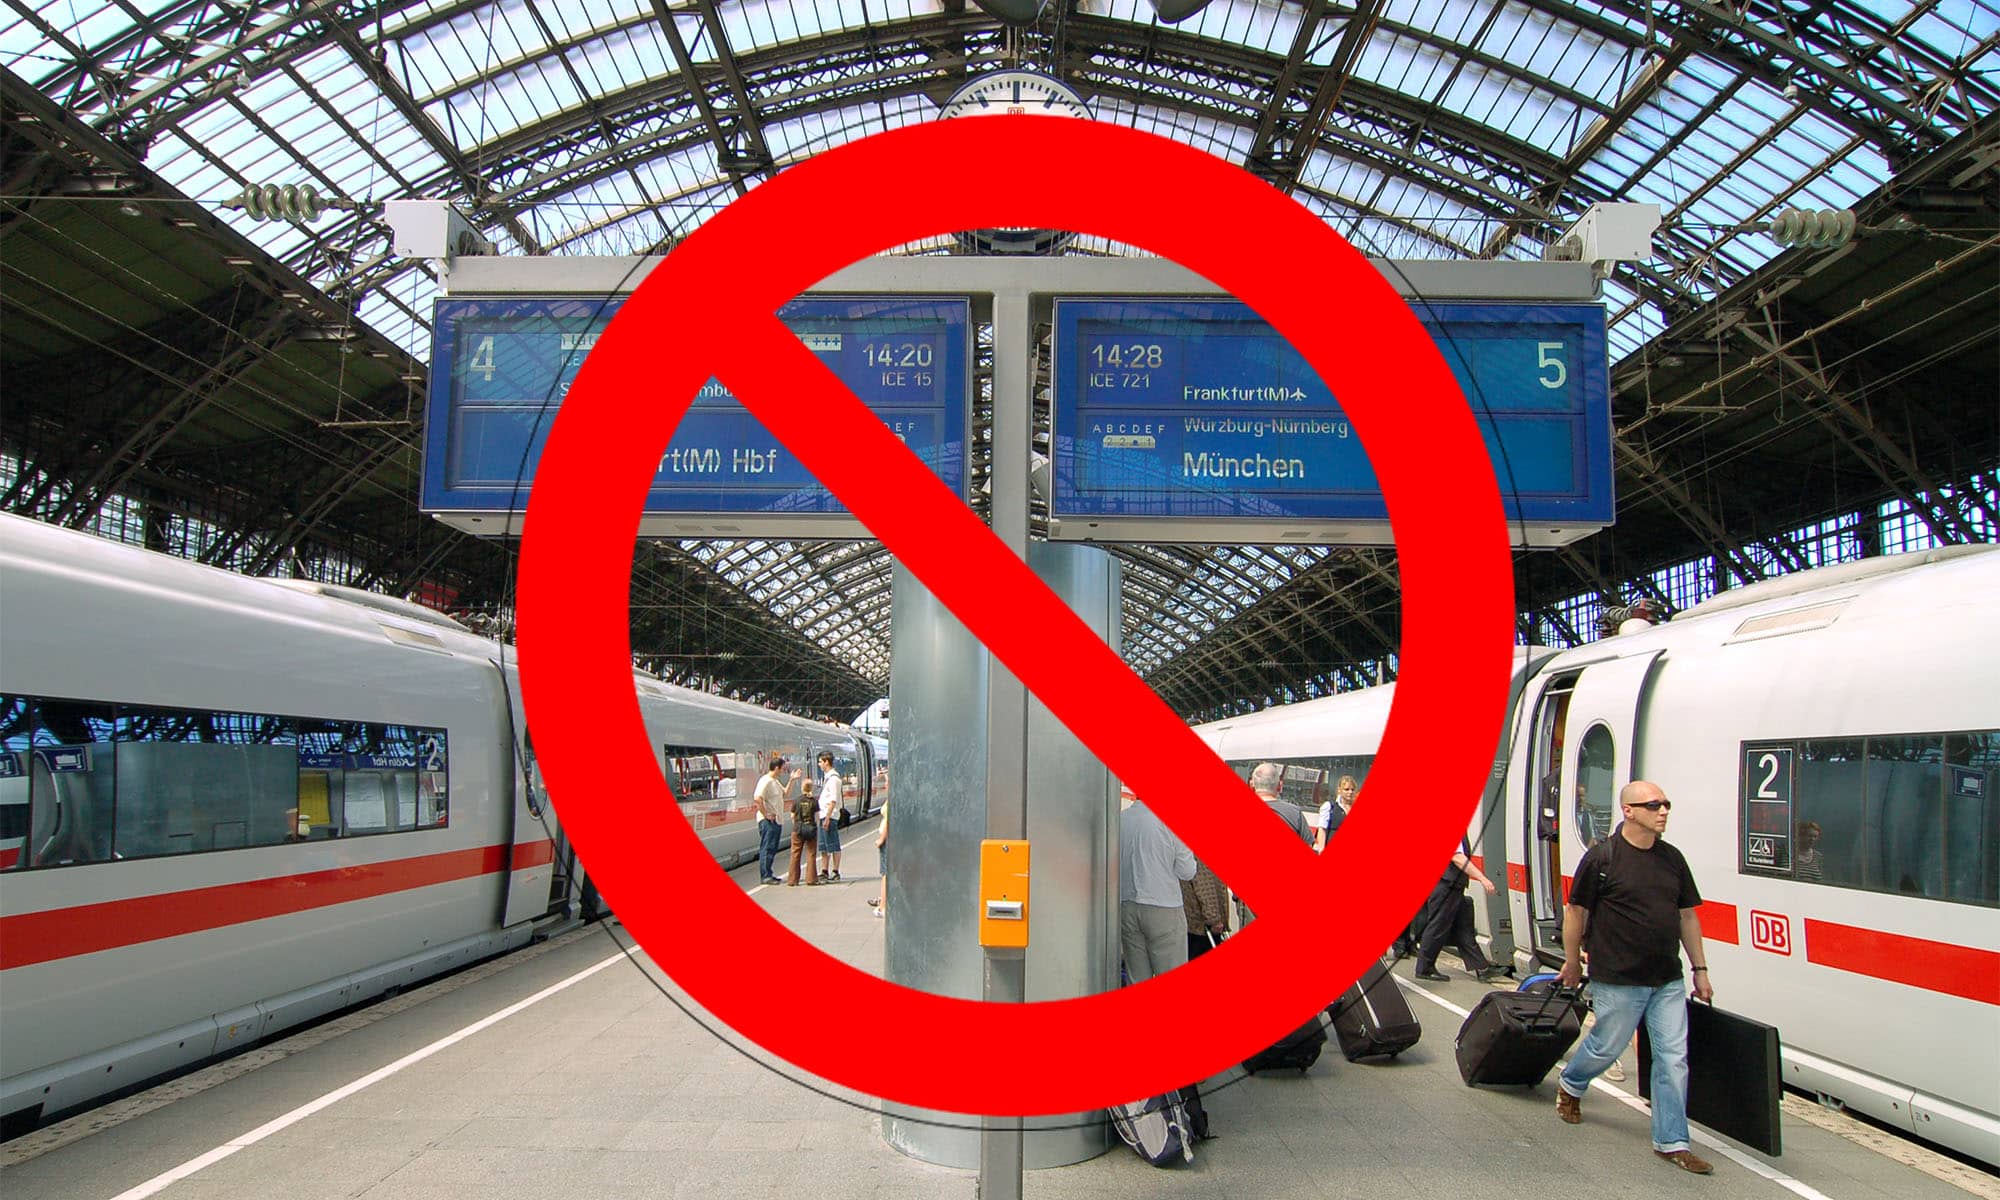 Der Kölner Hauptbahnhof mit Zügen, das Bild wird von einem Verbotszeichen überlagert.